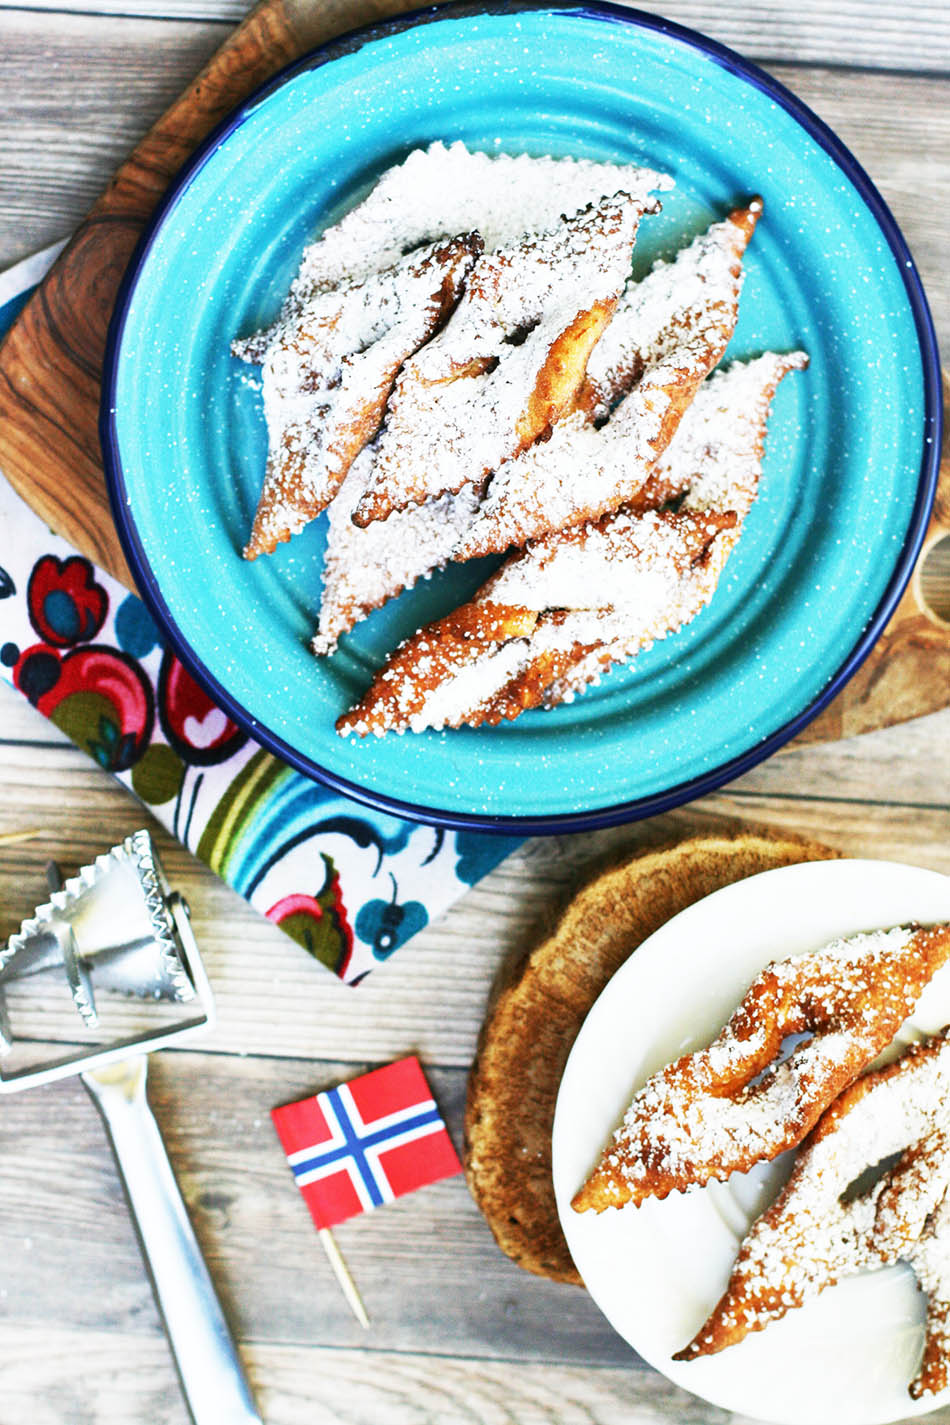 挪威饼干:学习如何在家制作这款传统的圣诞饼干!